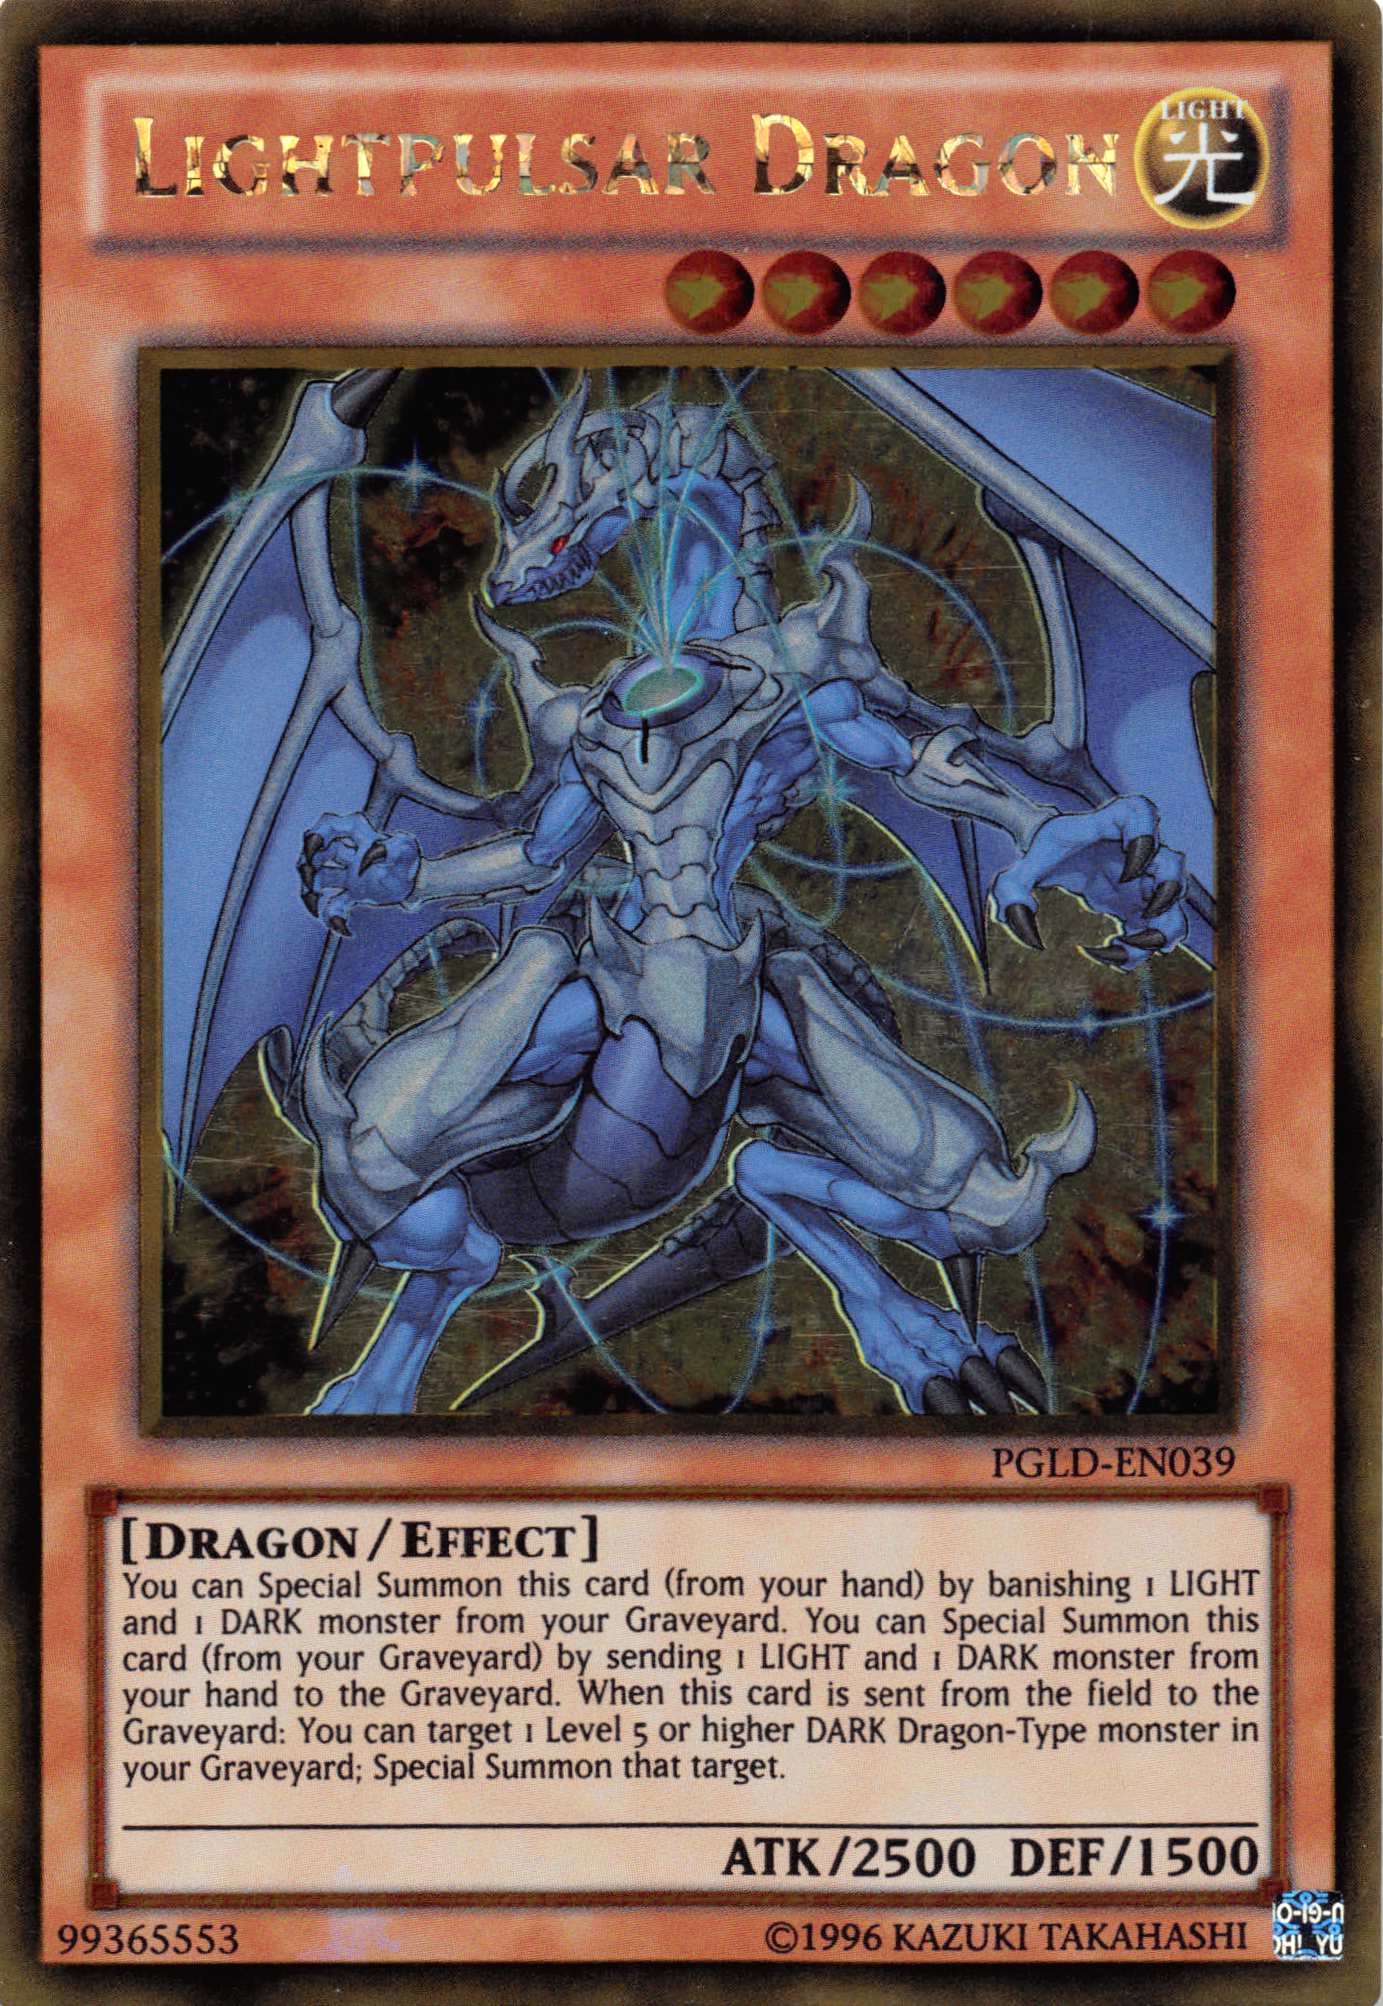 Lightpulsar Dragon [PGLD-EN039] Gold Rare